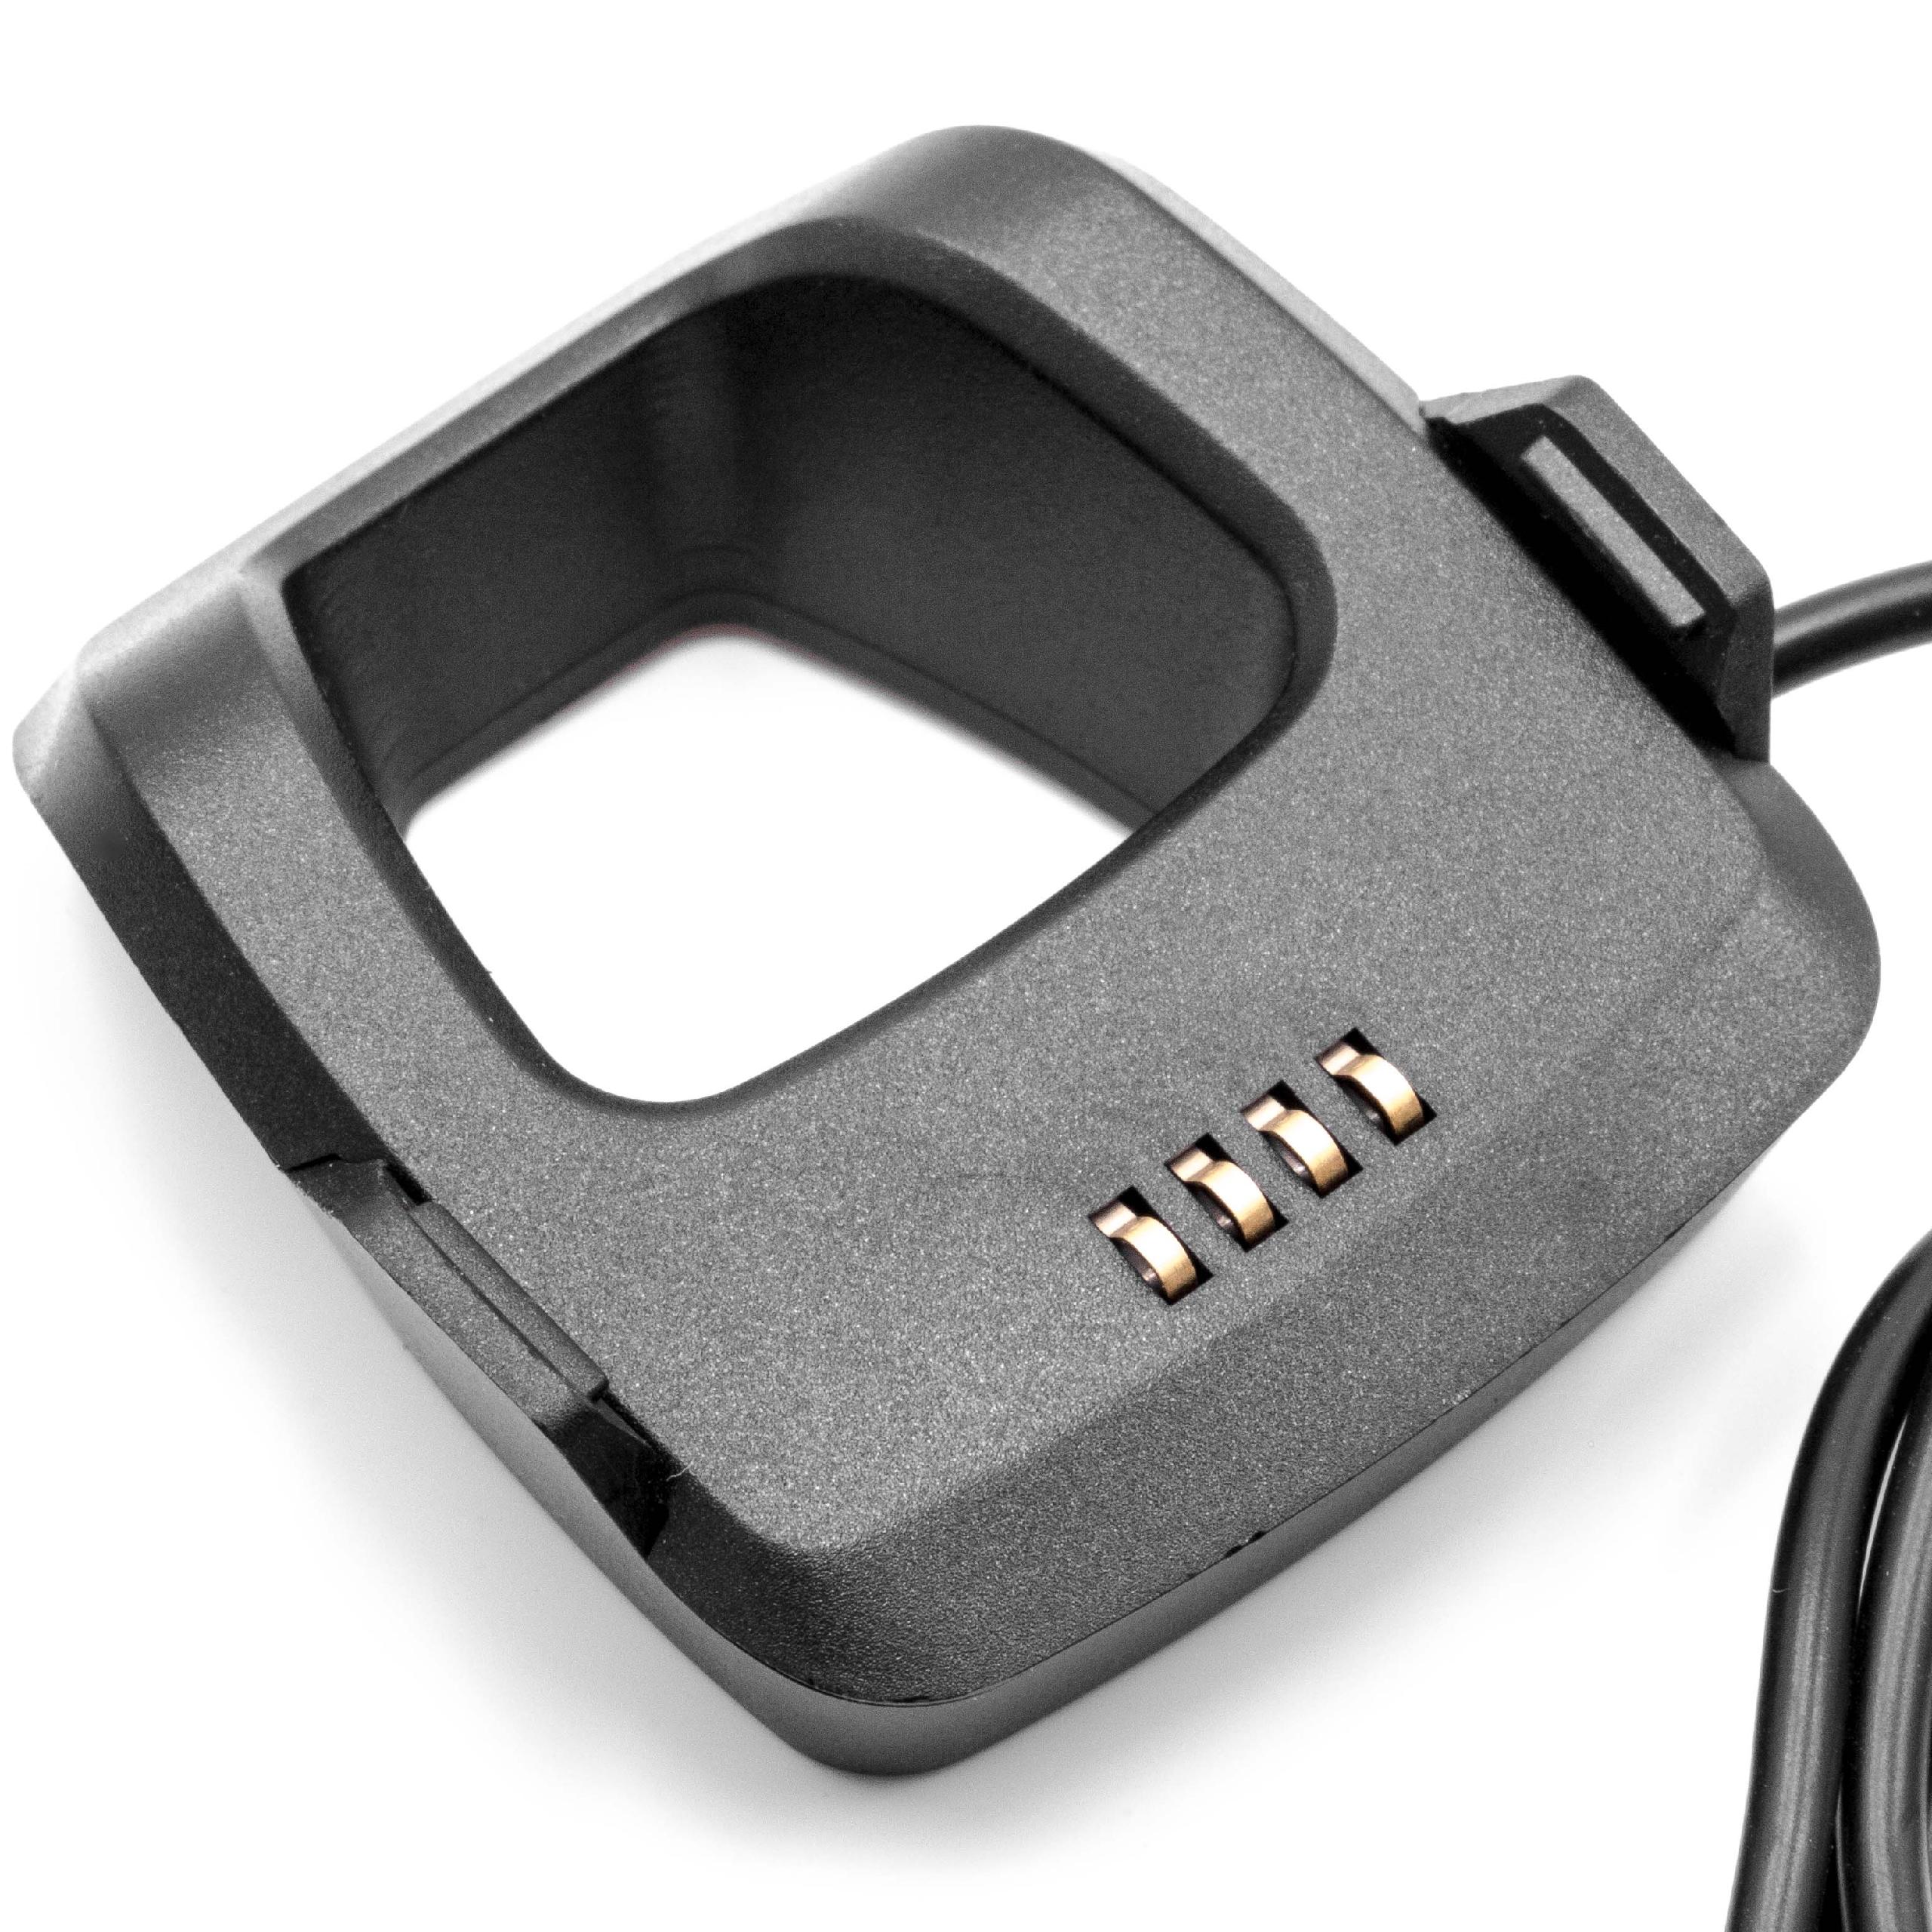 Cable de carga USB para smartwatch Garmin Forerunner 205, 305 - negro 95 cm